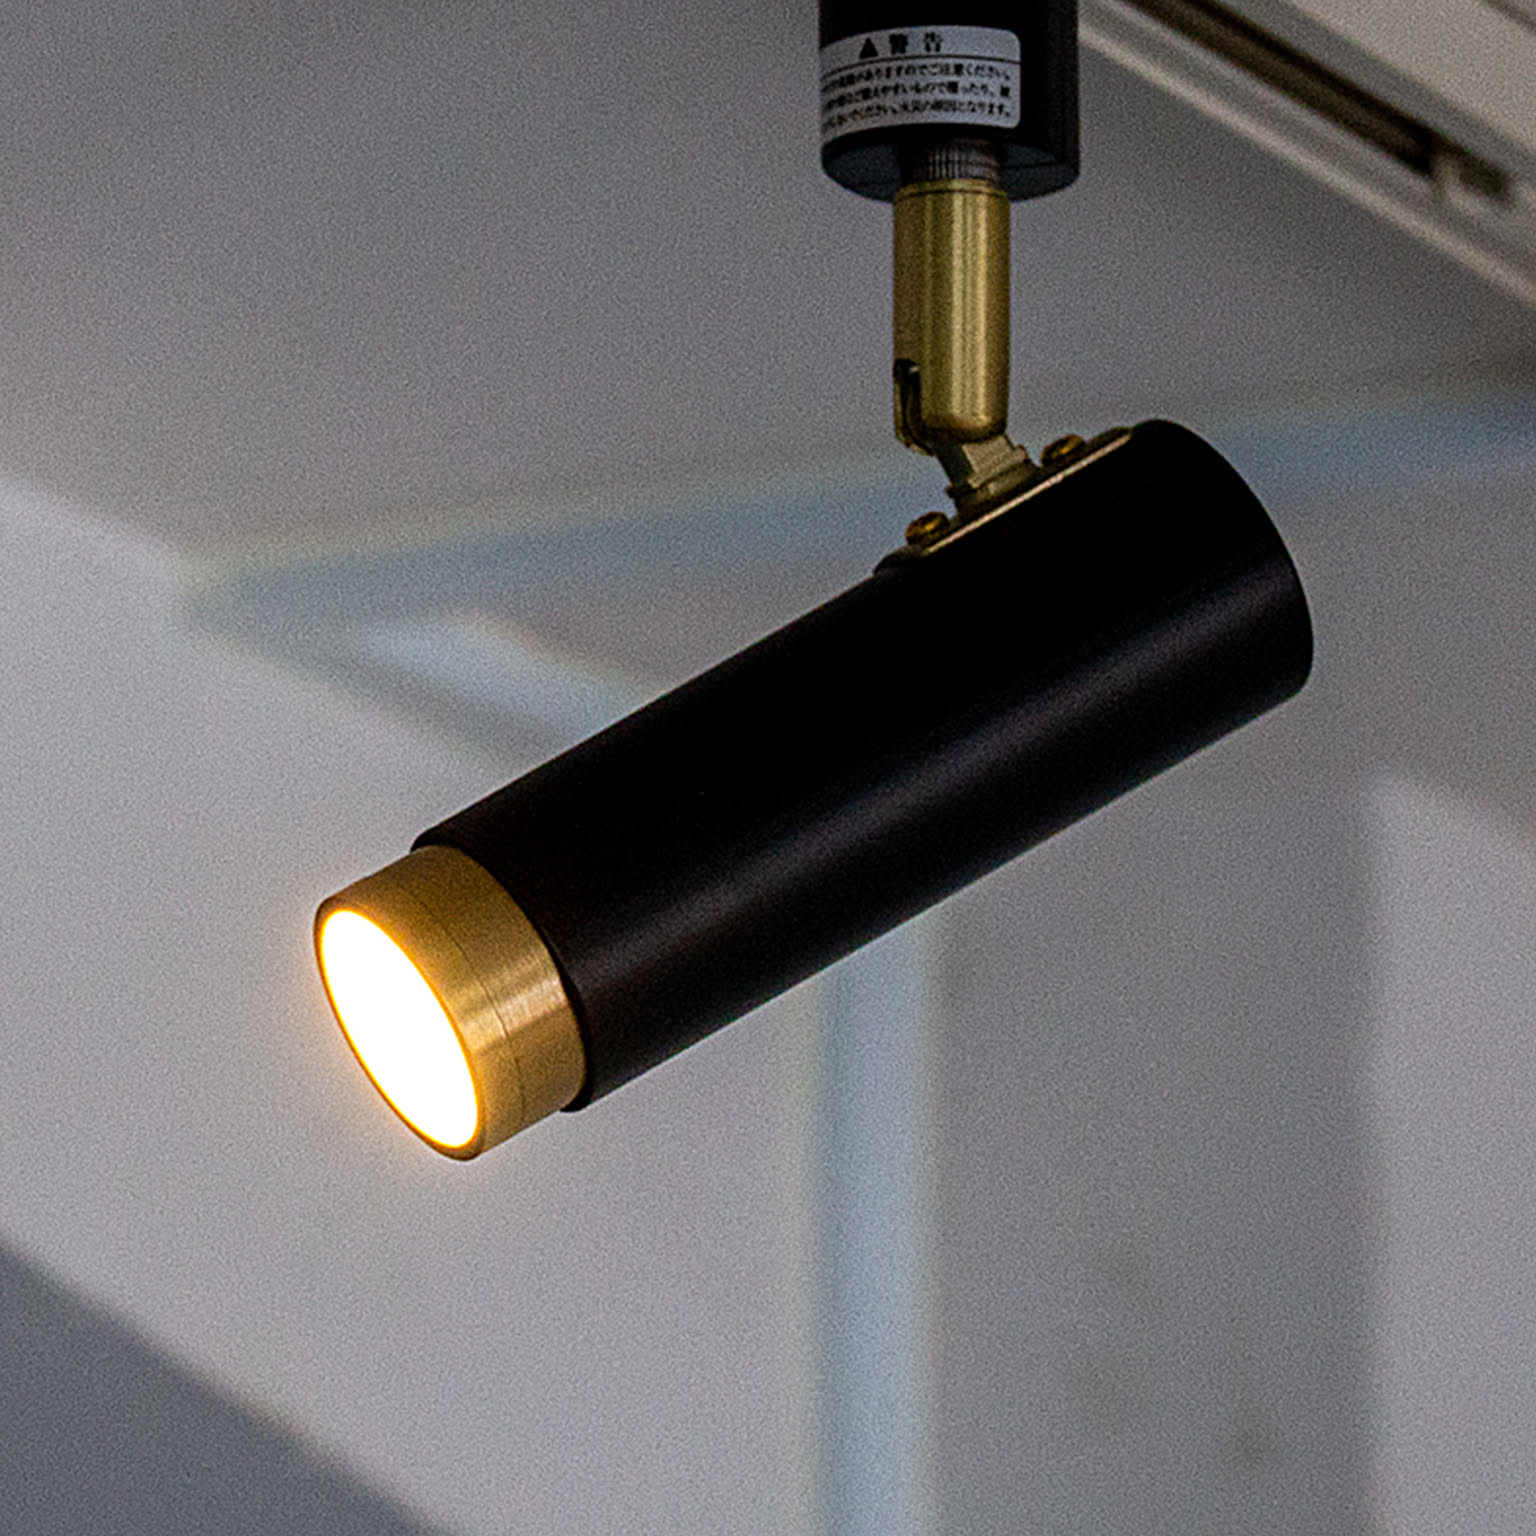 LED スポットライト 1灯 ノーシュ リモコンセット シーリングライト ダウンライト おしゃれ 照明器具 インテリア 北欧 カフェ モダン キッチン 調光 調色 アプリ対応 スマートスピーカー対応 